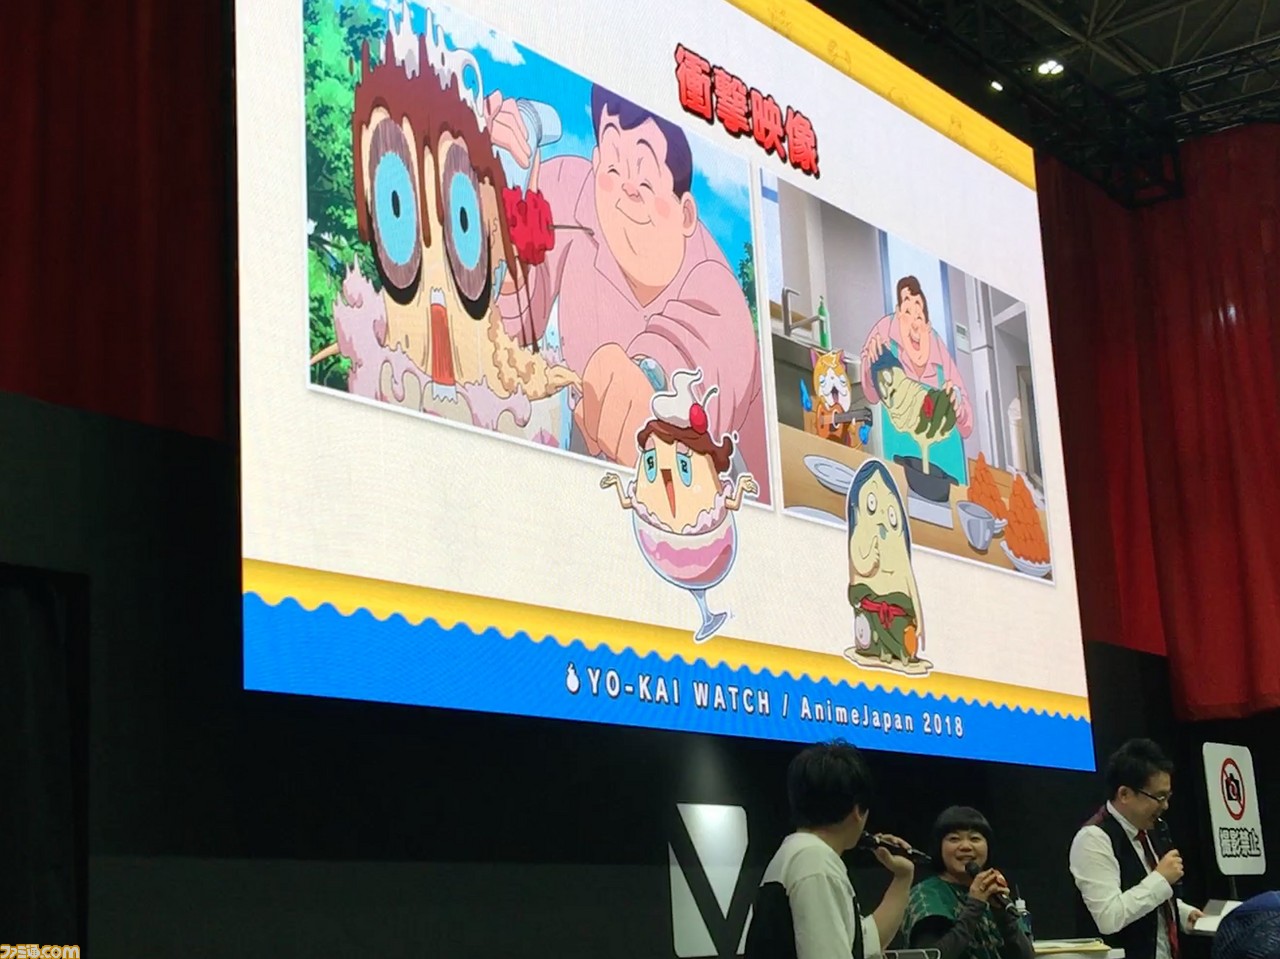 妖怪ウォッチ シャドウサイド 放送開始記念 ジバニャンとウィスパーが思い出を語らったアニメ 妖怪ウォッチ ステージリポート Anime Japan 18 ファミ通 Com